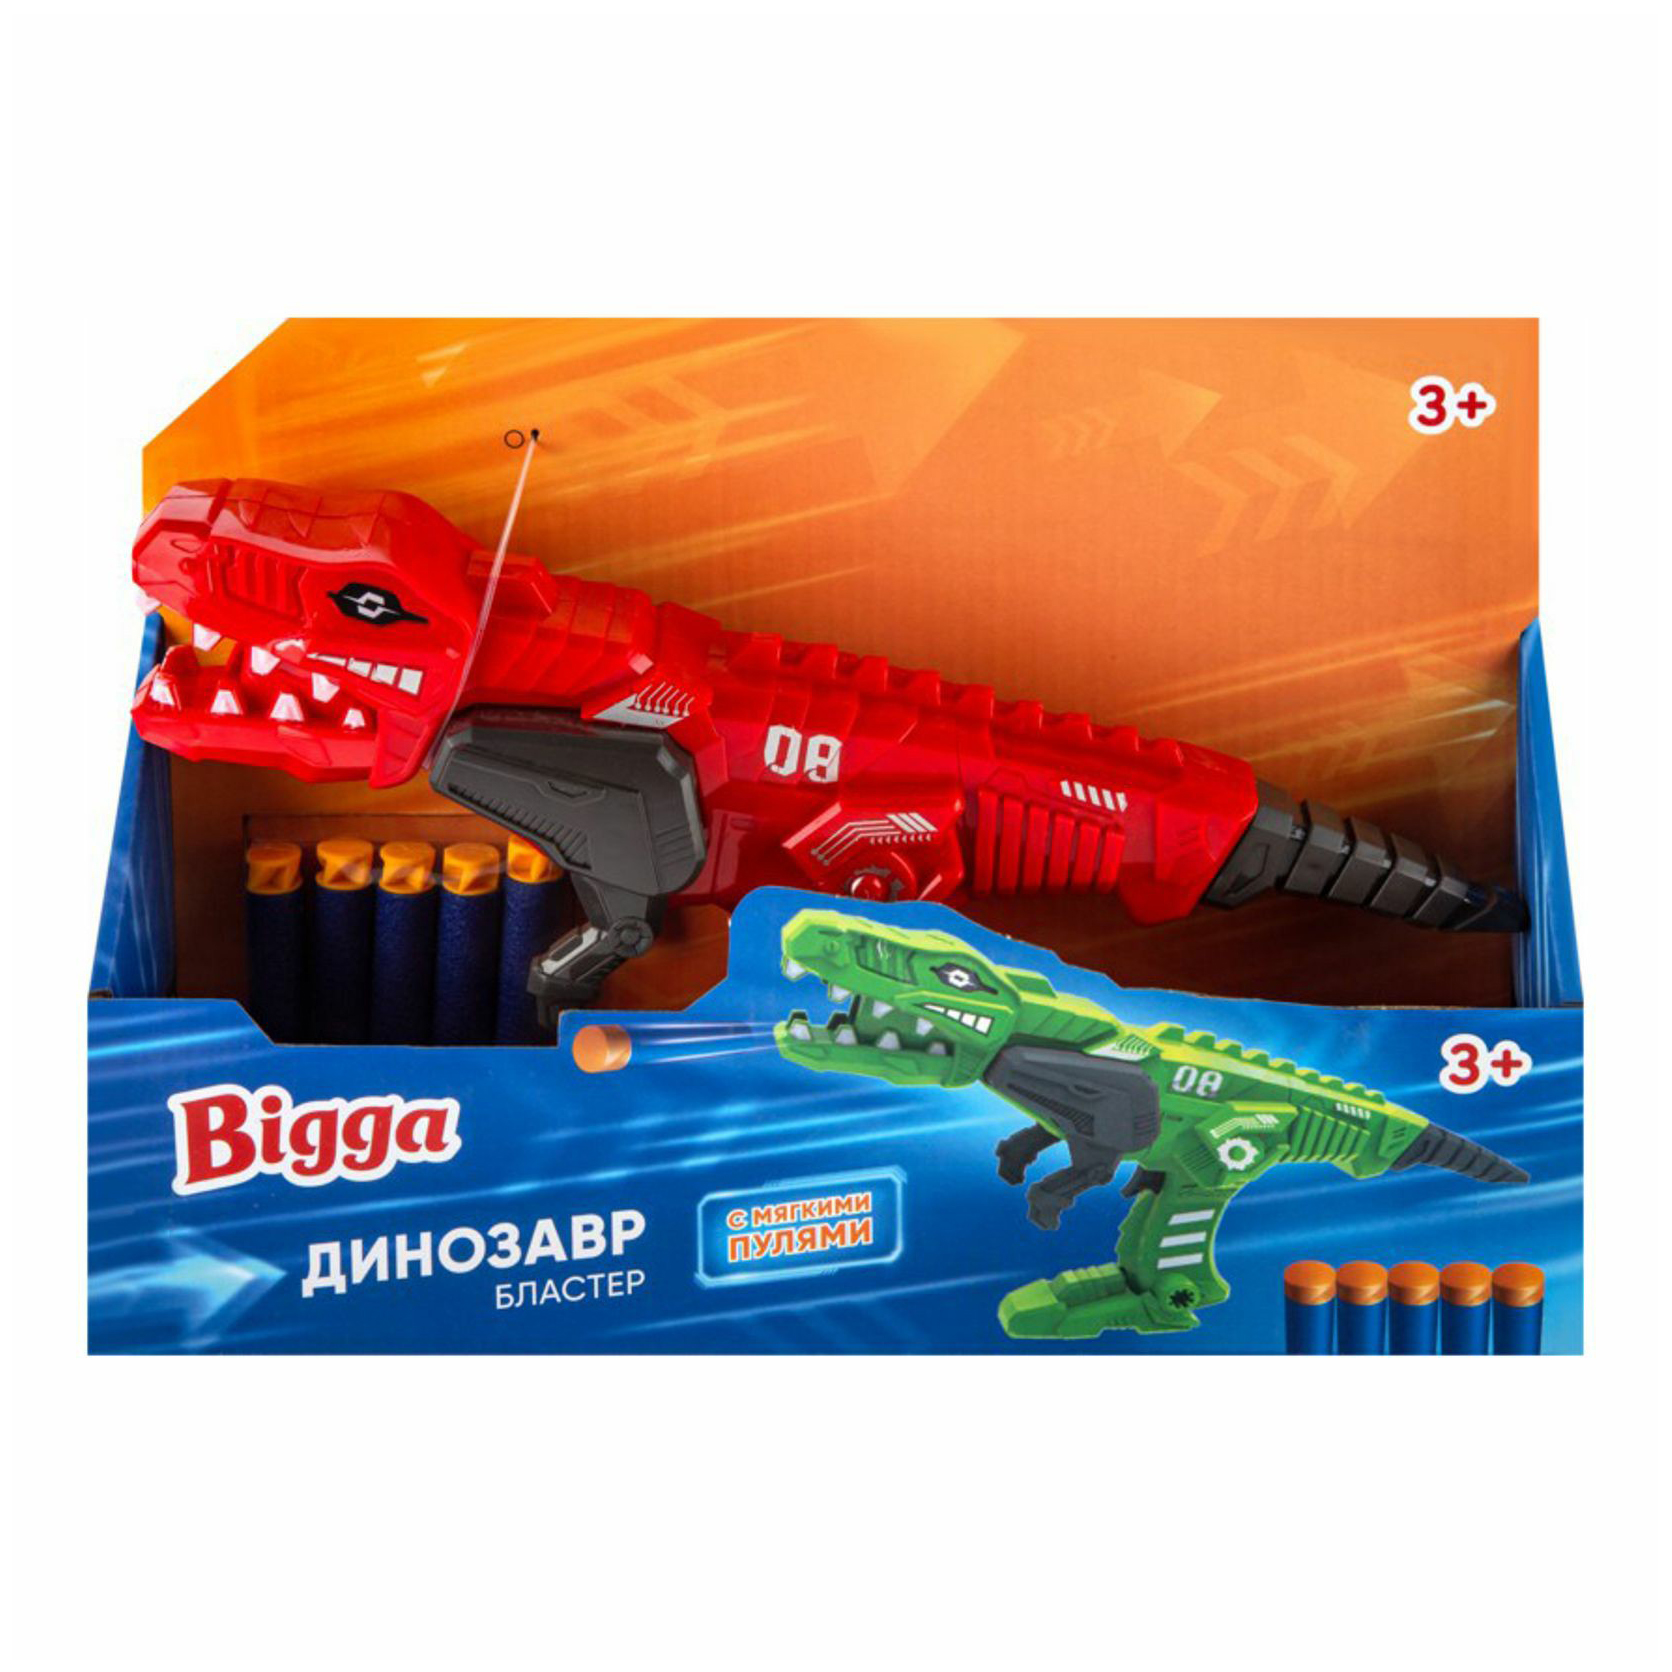 Игровой набор Bigga Бластер Динозавр 6 предметов